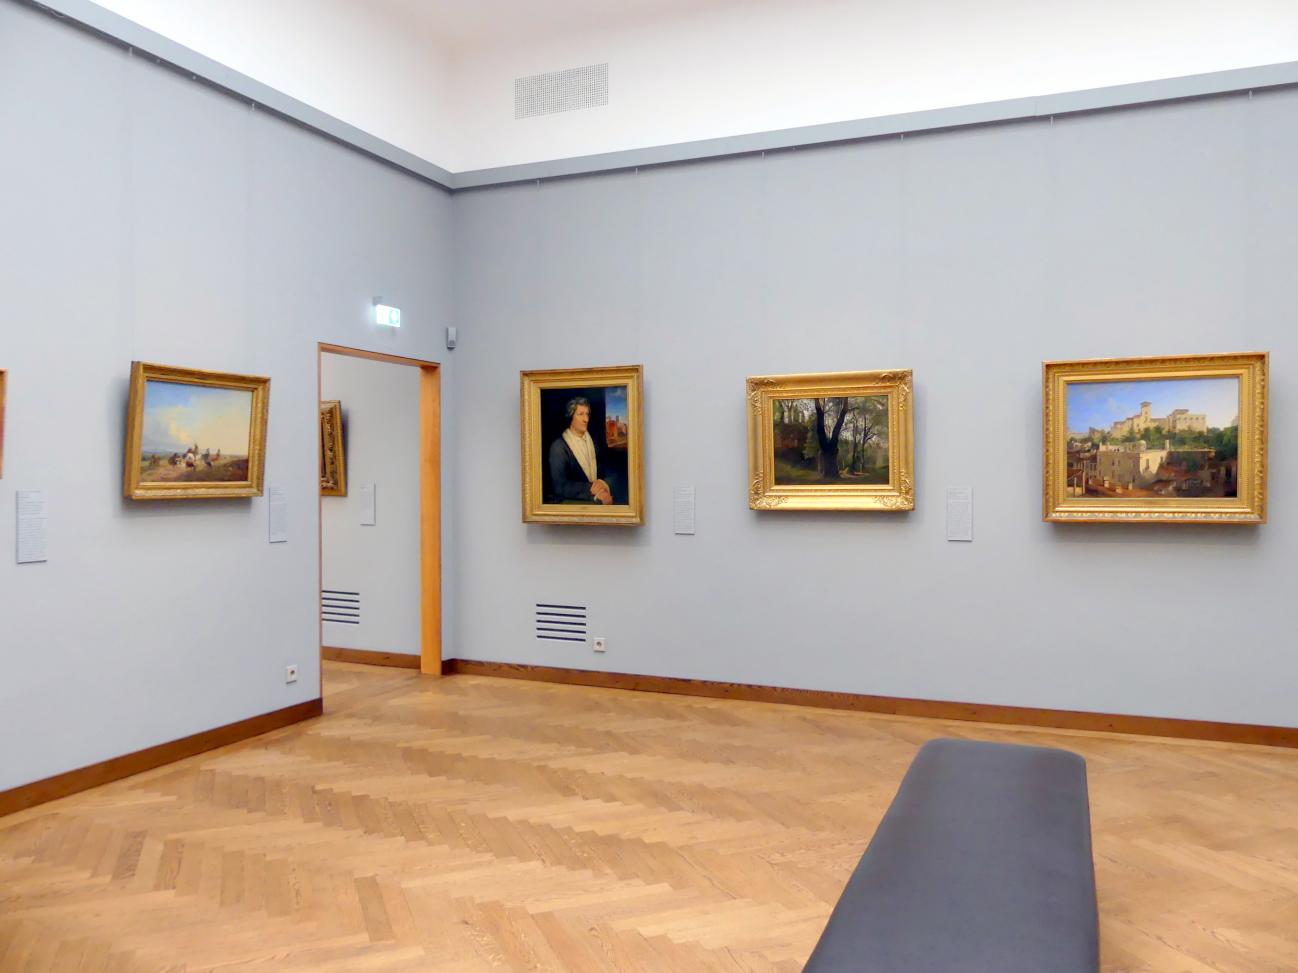 München, Neue Pinakothek in der Sammlung Schack, Saal 19, Bild 1/3